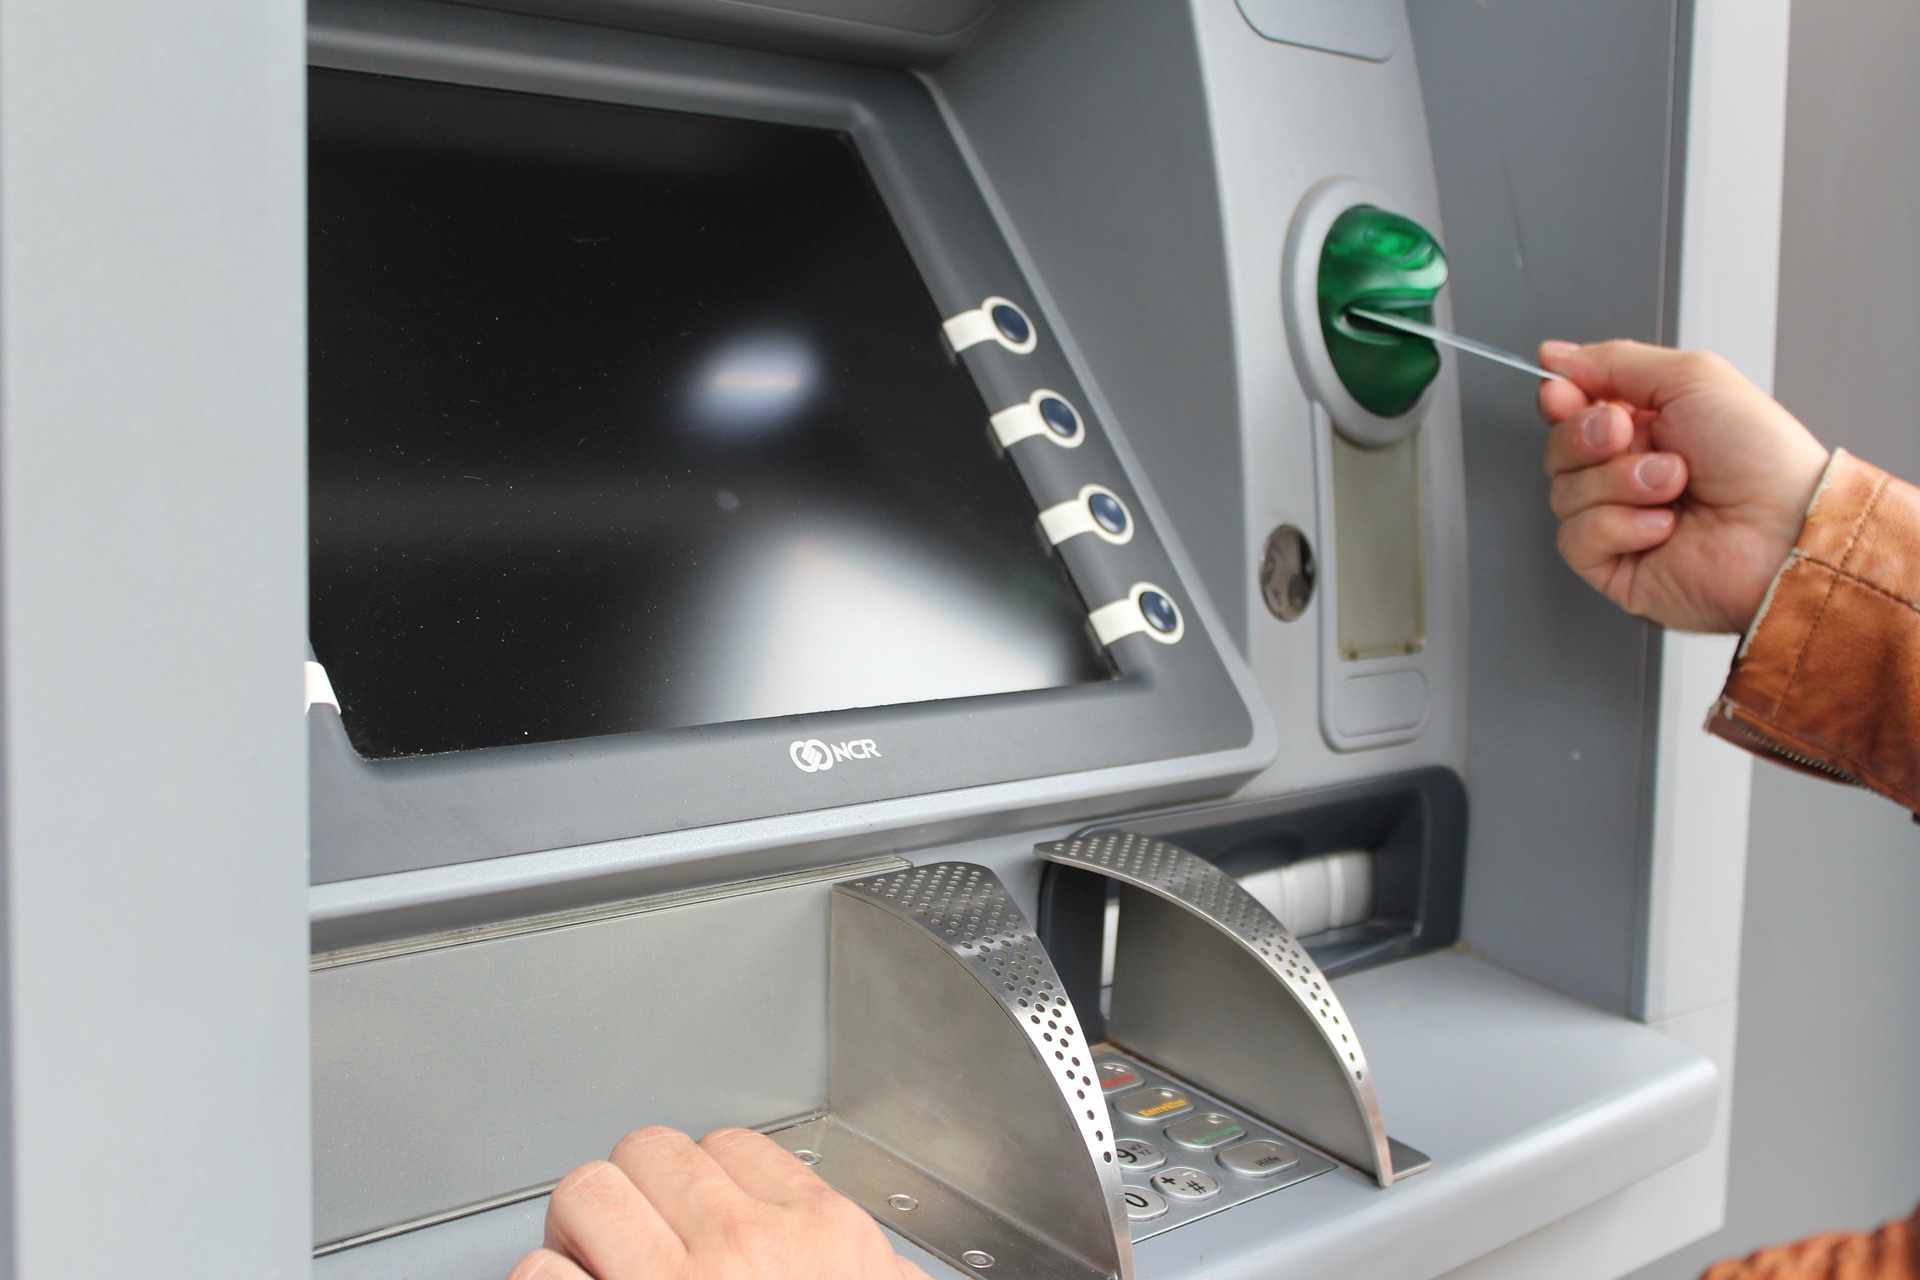 Thẻ Timo rút miễn phí những ATM ngân hàng nào?